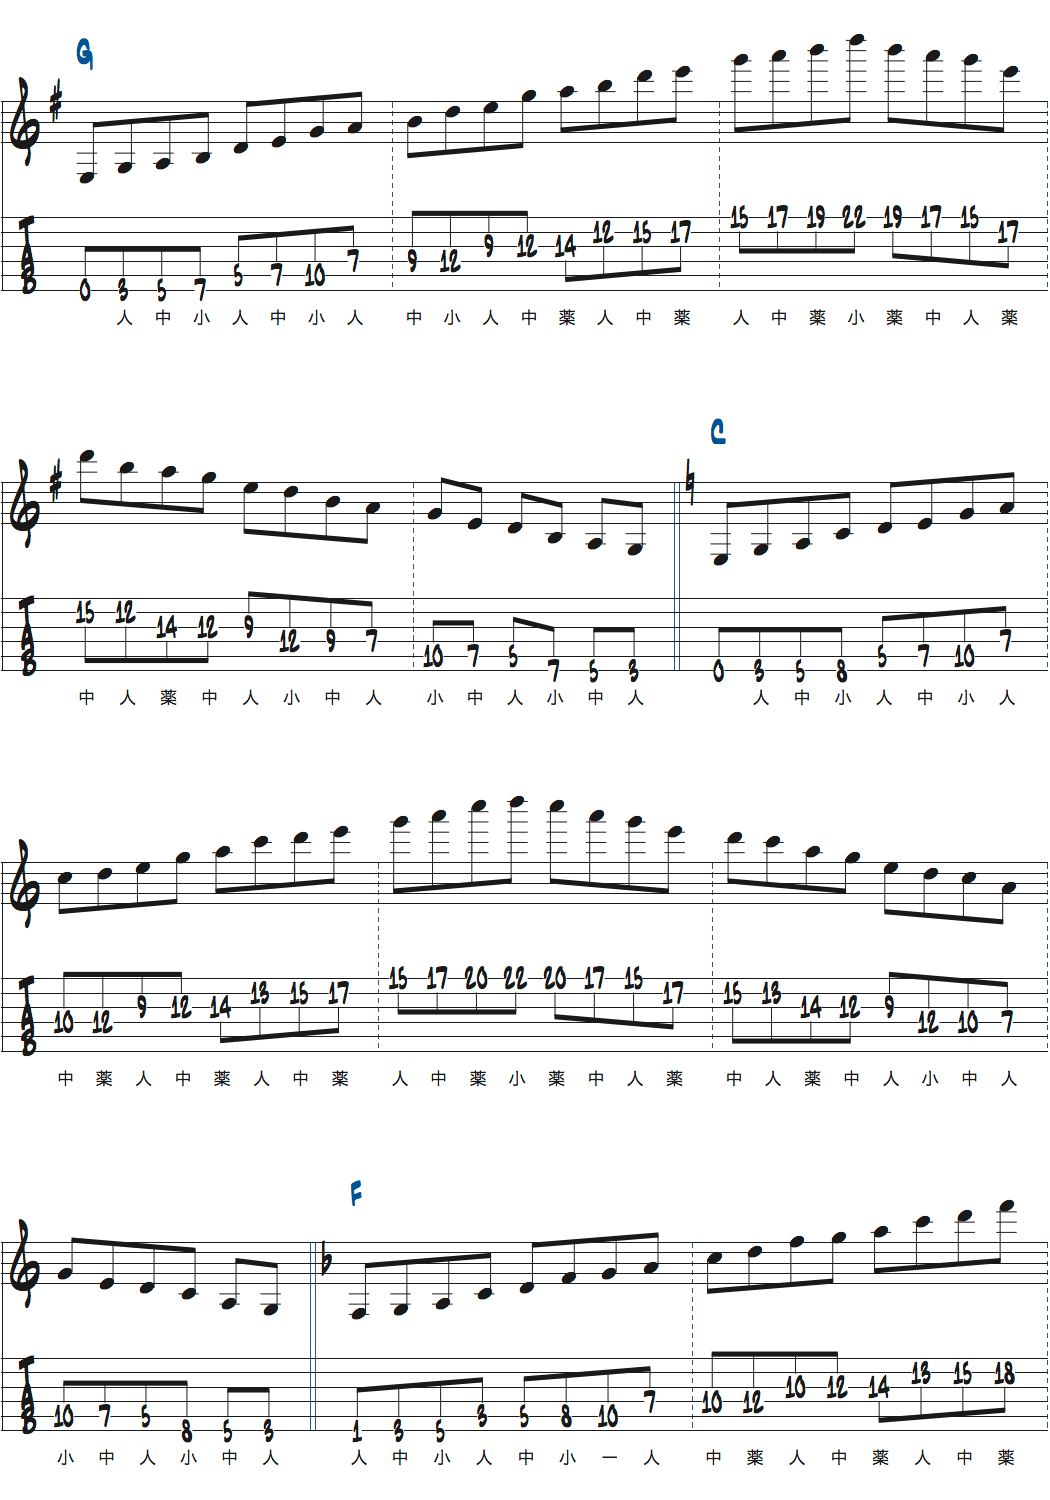 カートローゼンウィンケルのスケールウォーミングアップペンタトニックスケール楽譜ページ1